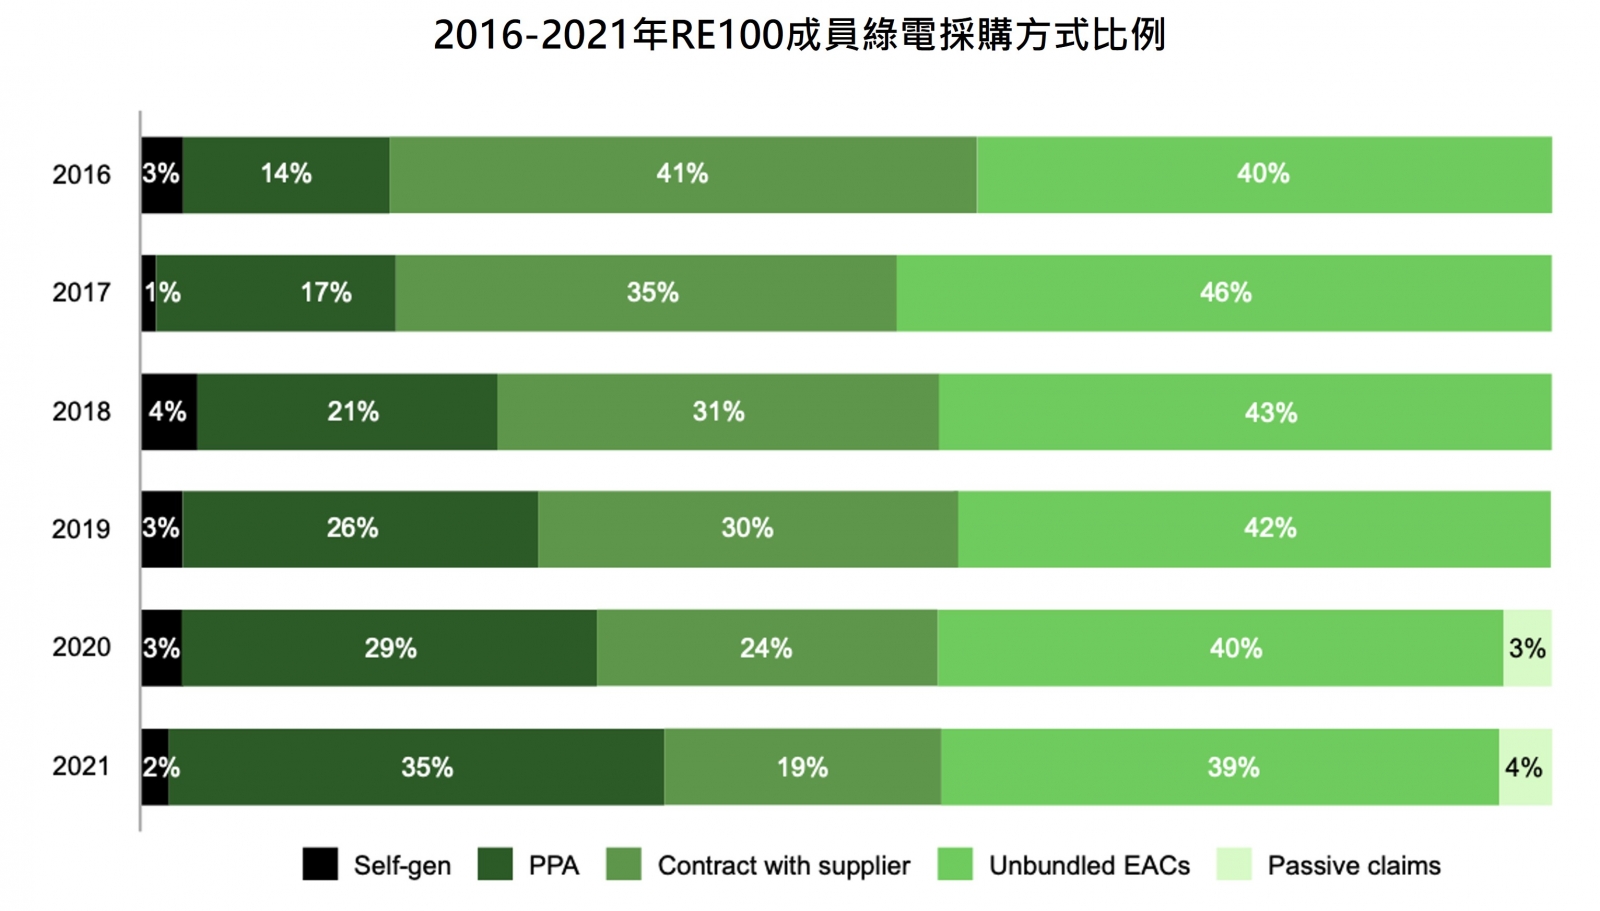 2016-2021年RE100成員綠電採購方式比例